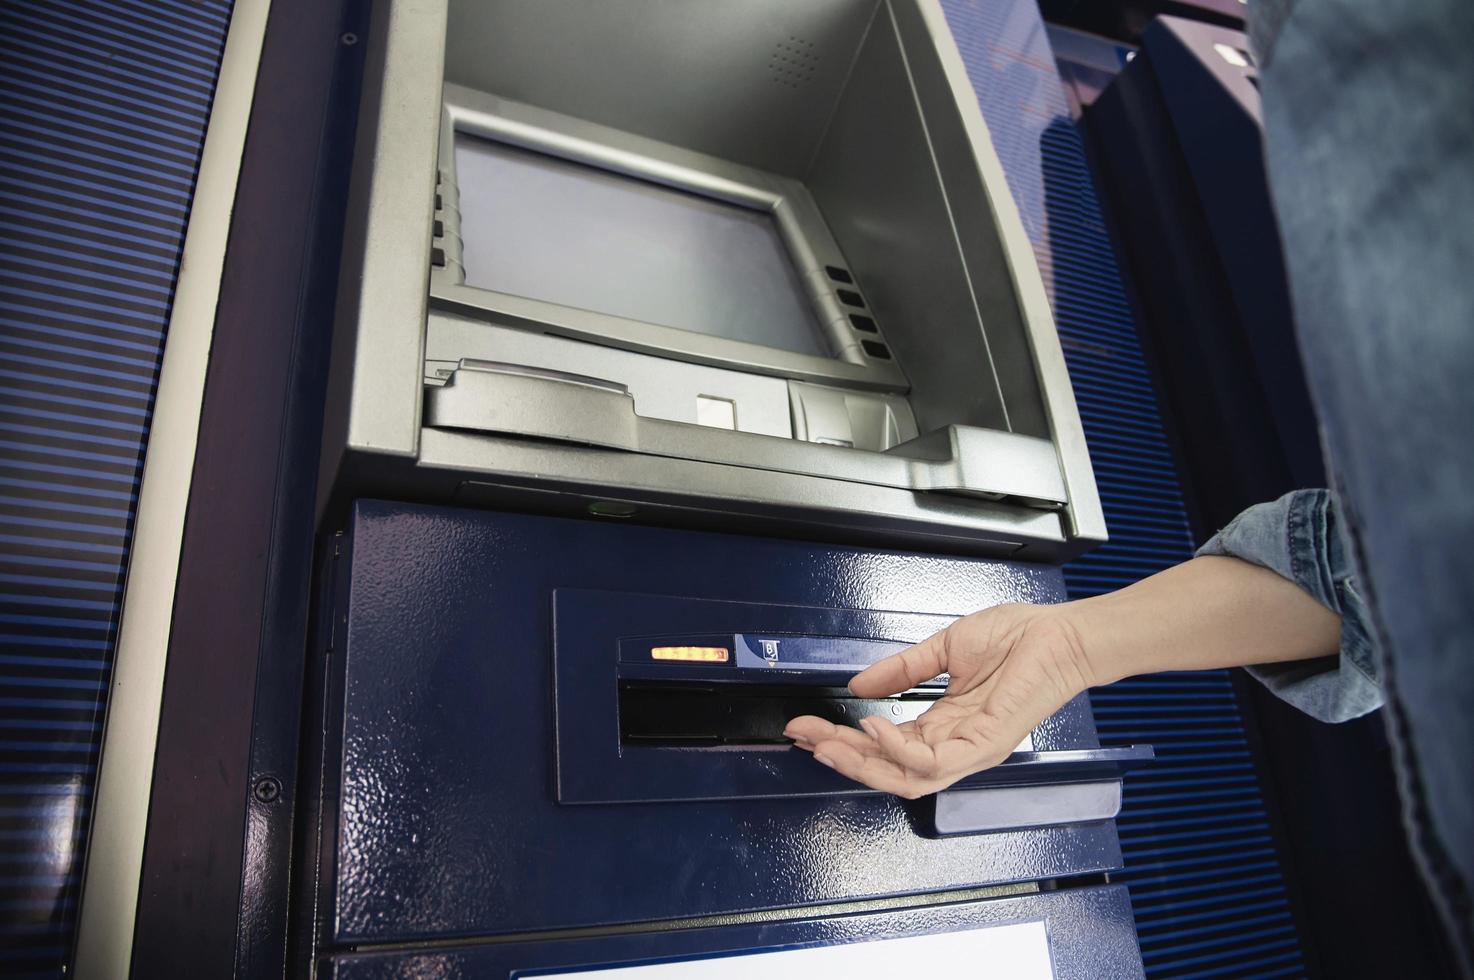 människor som väntar på att få pengar från automat - människor som tar ut pengar från bankomatkonceptet foto